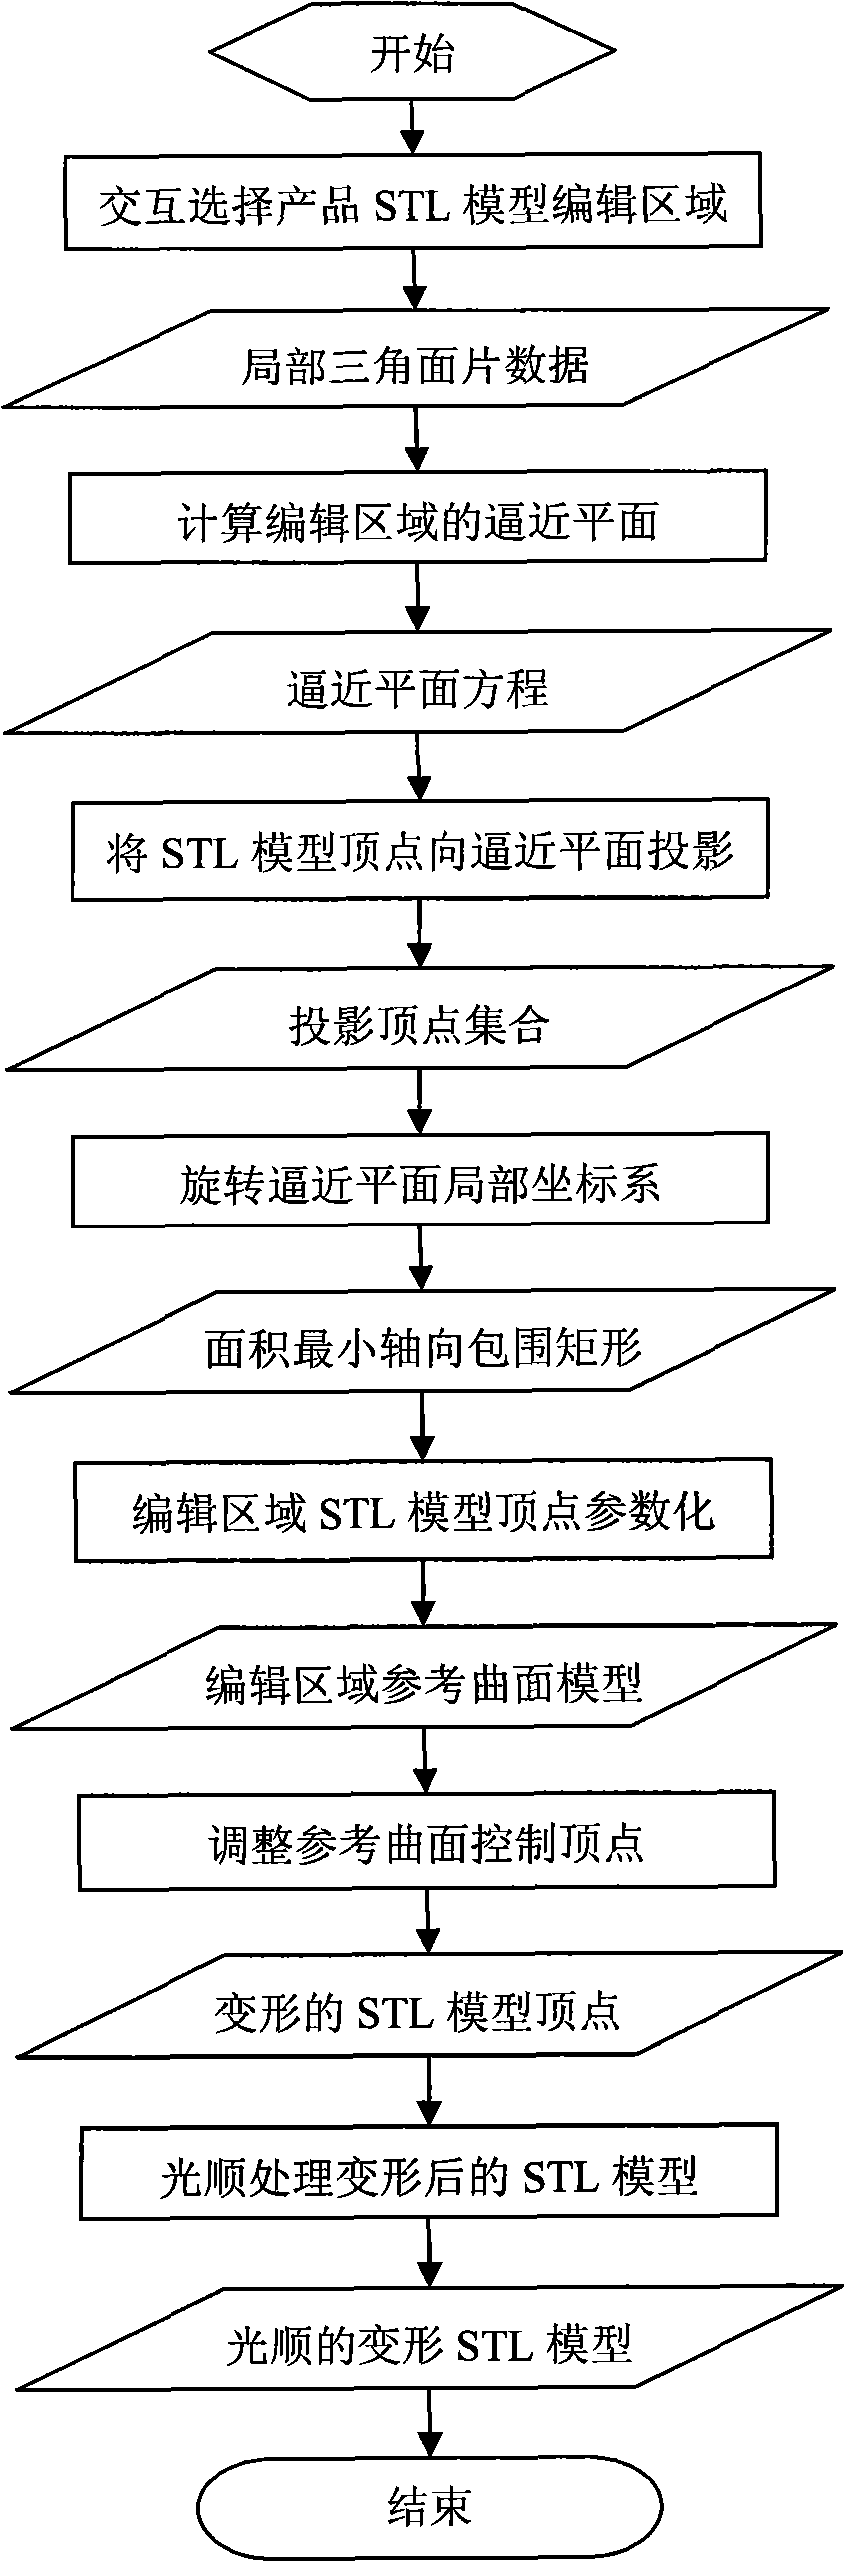 Deformation design method for product STL model